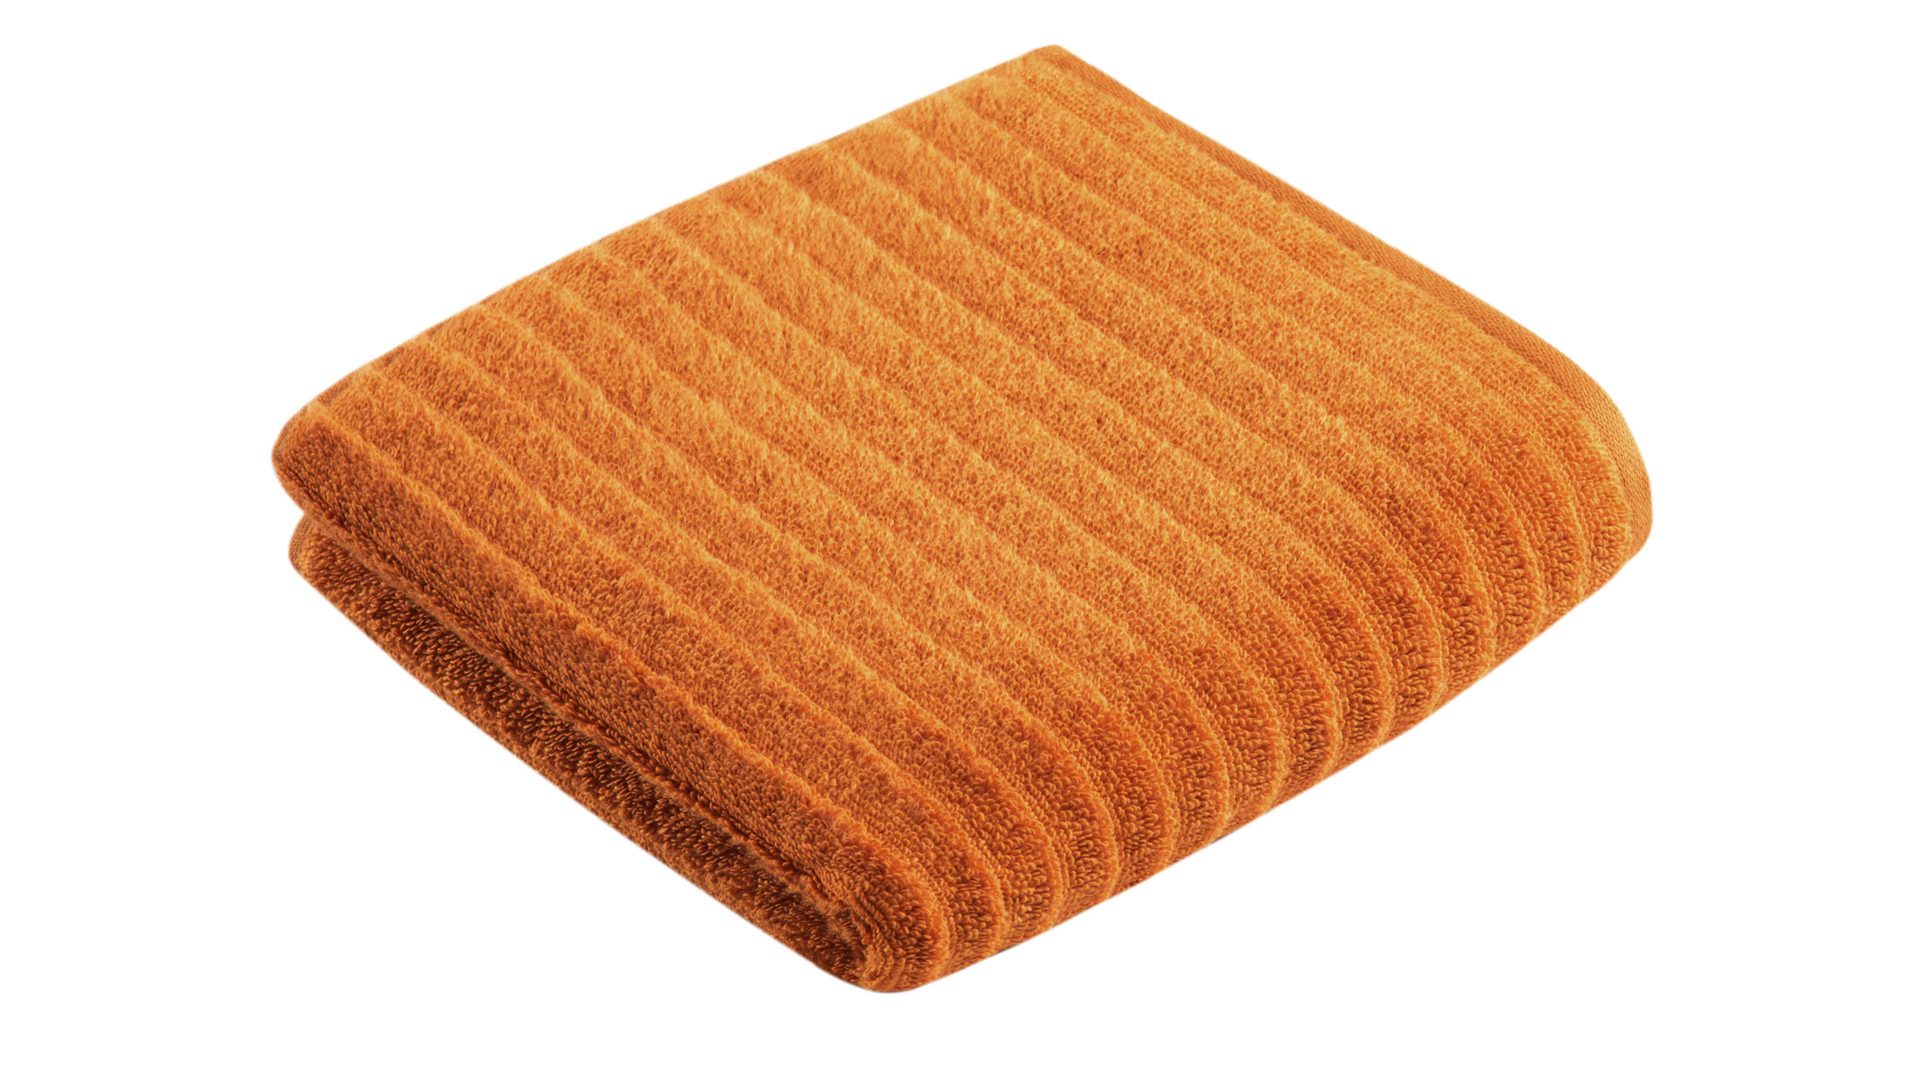 Handtuch Vossen aus Naturfaser in Orange VOSSEN® Frottee-Serie Mystic - Handtuch fuchsfarbene Baumwolle - ca. 60 x 110 cm